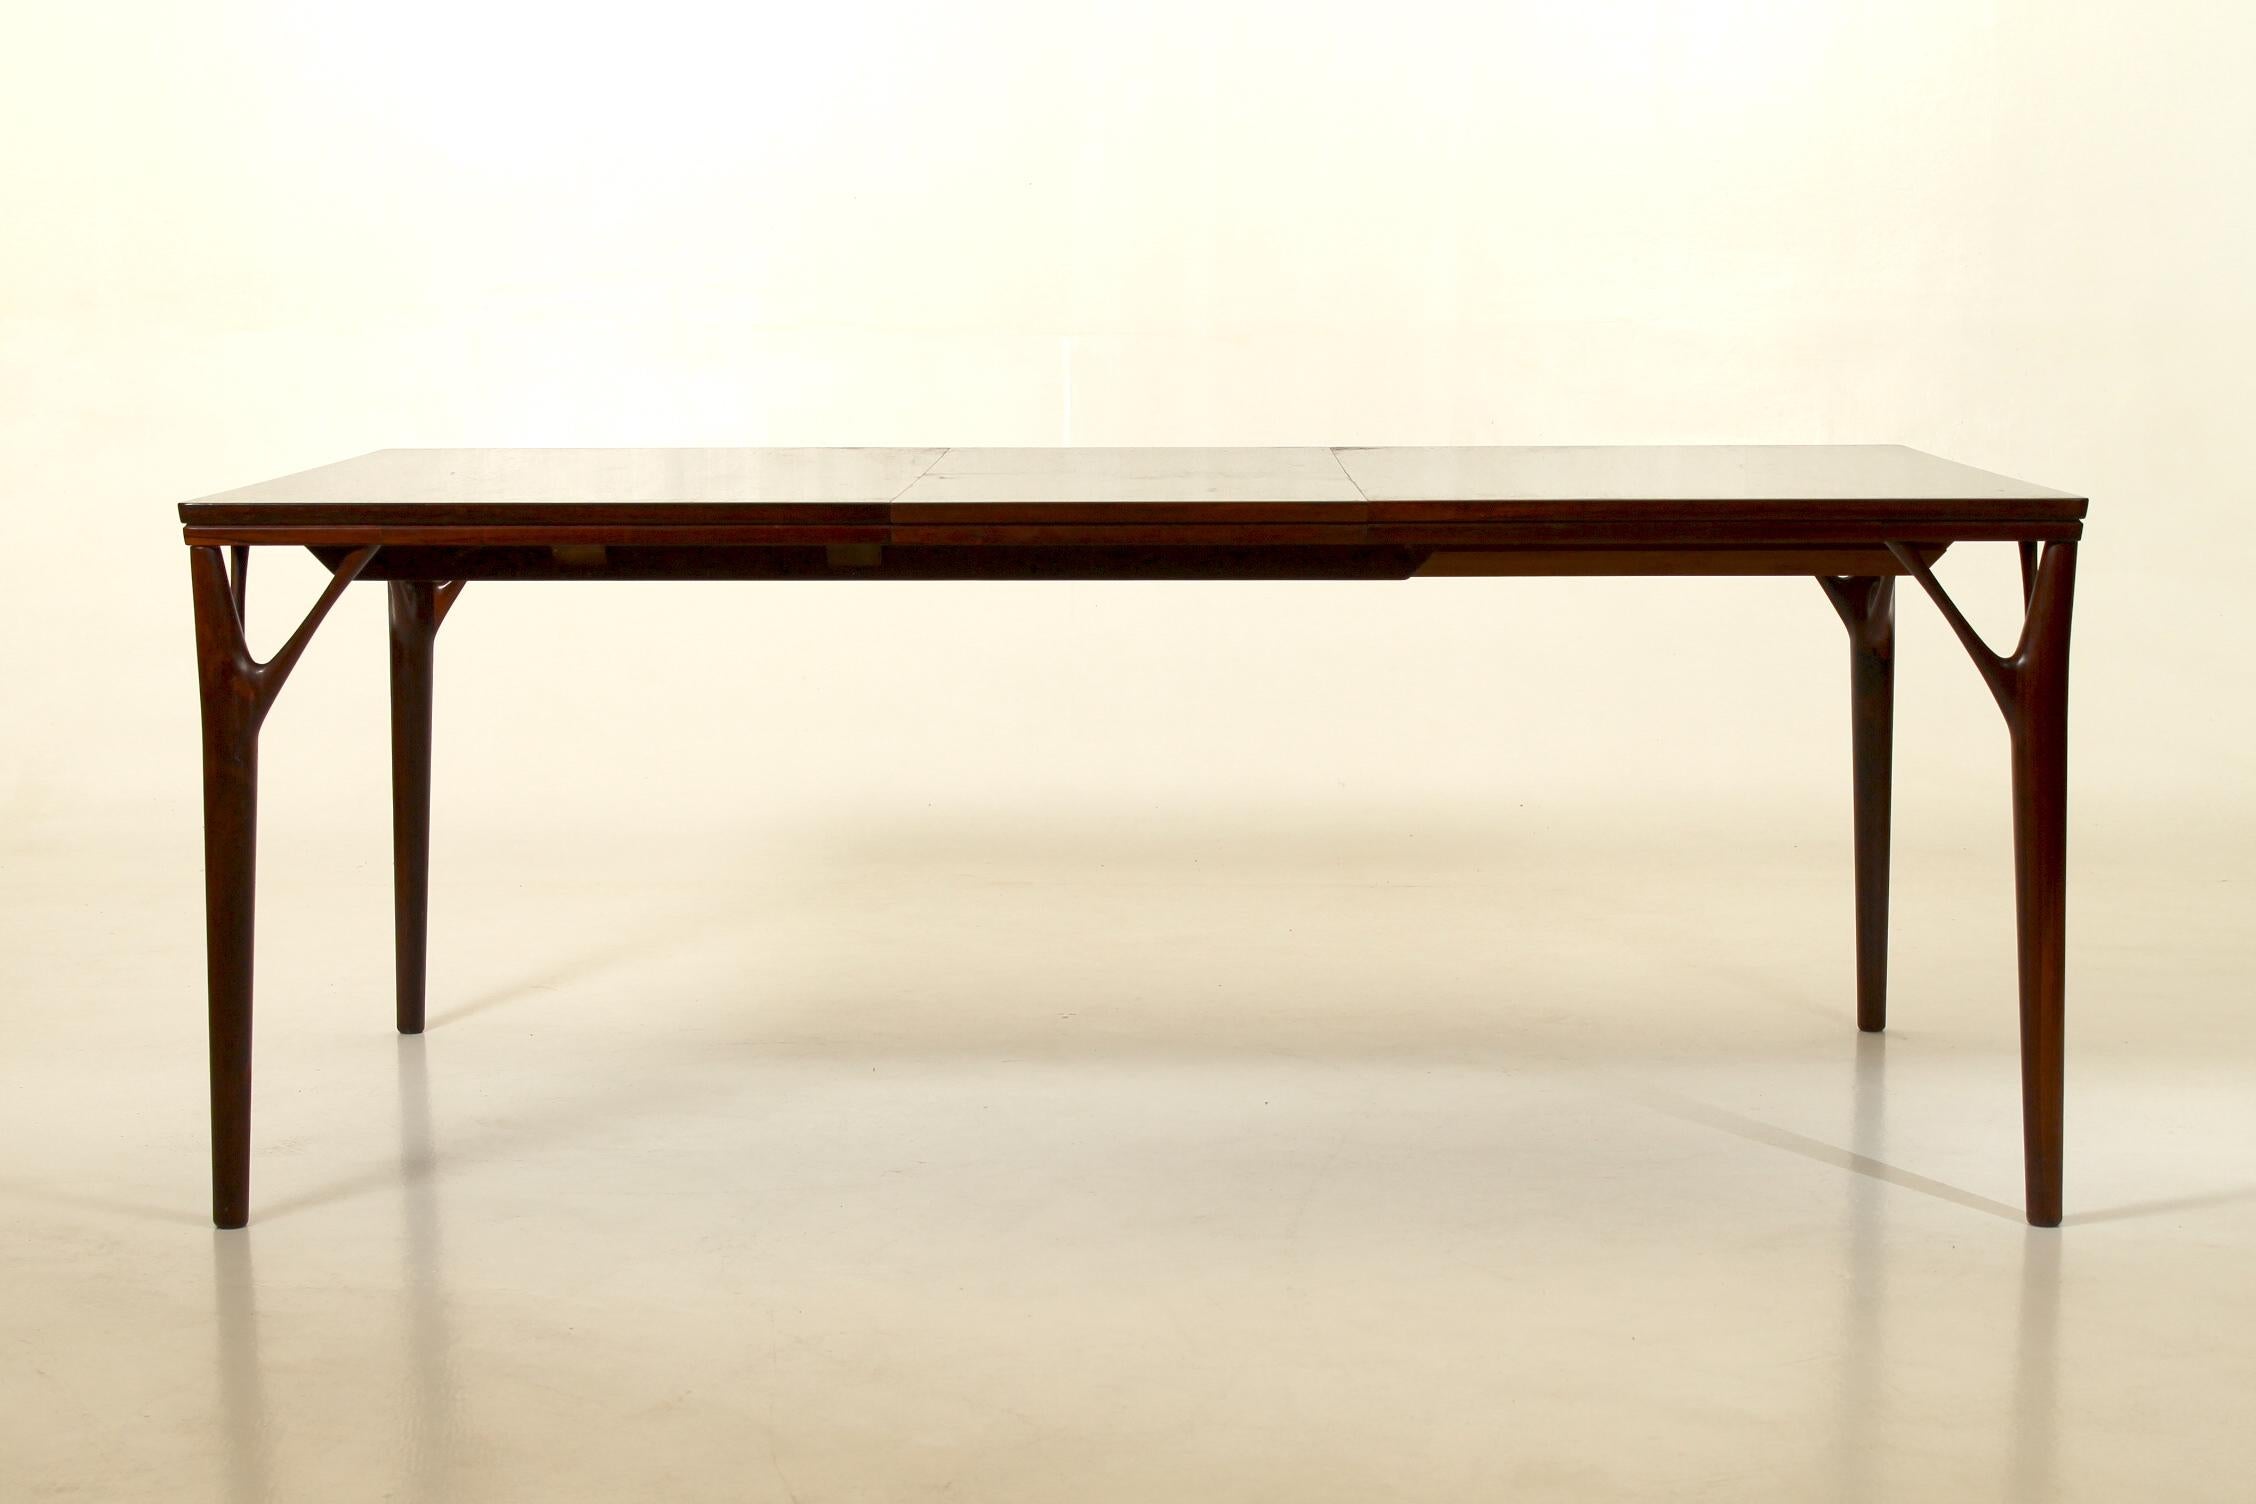 Table de salle à manger danoise rectangulaire en bois de rose, conçue par Helge Vestergaard Jensen pour Søren Horn, à la fin des années 1960. 8-12 places assises, abattant à rallonge Up&Up, caché sous le plateau de la table.
La rallonge mesure 46